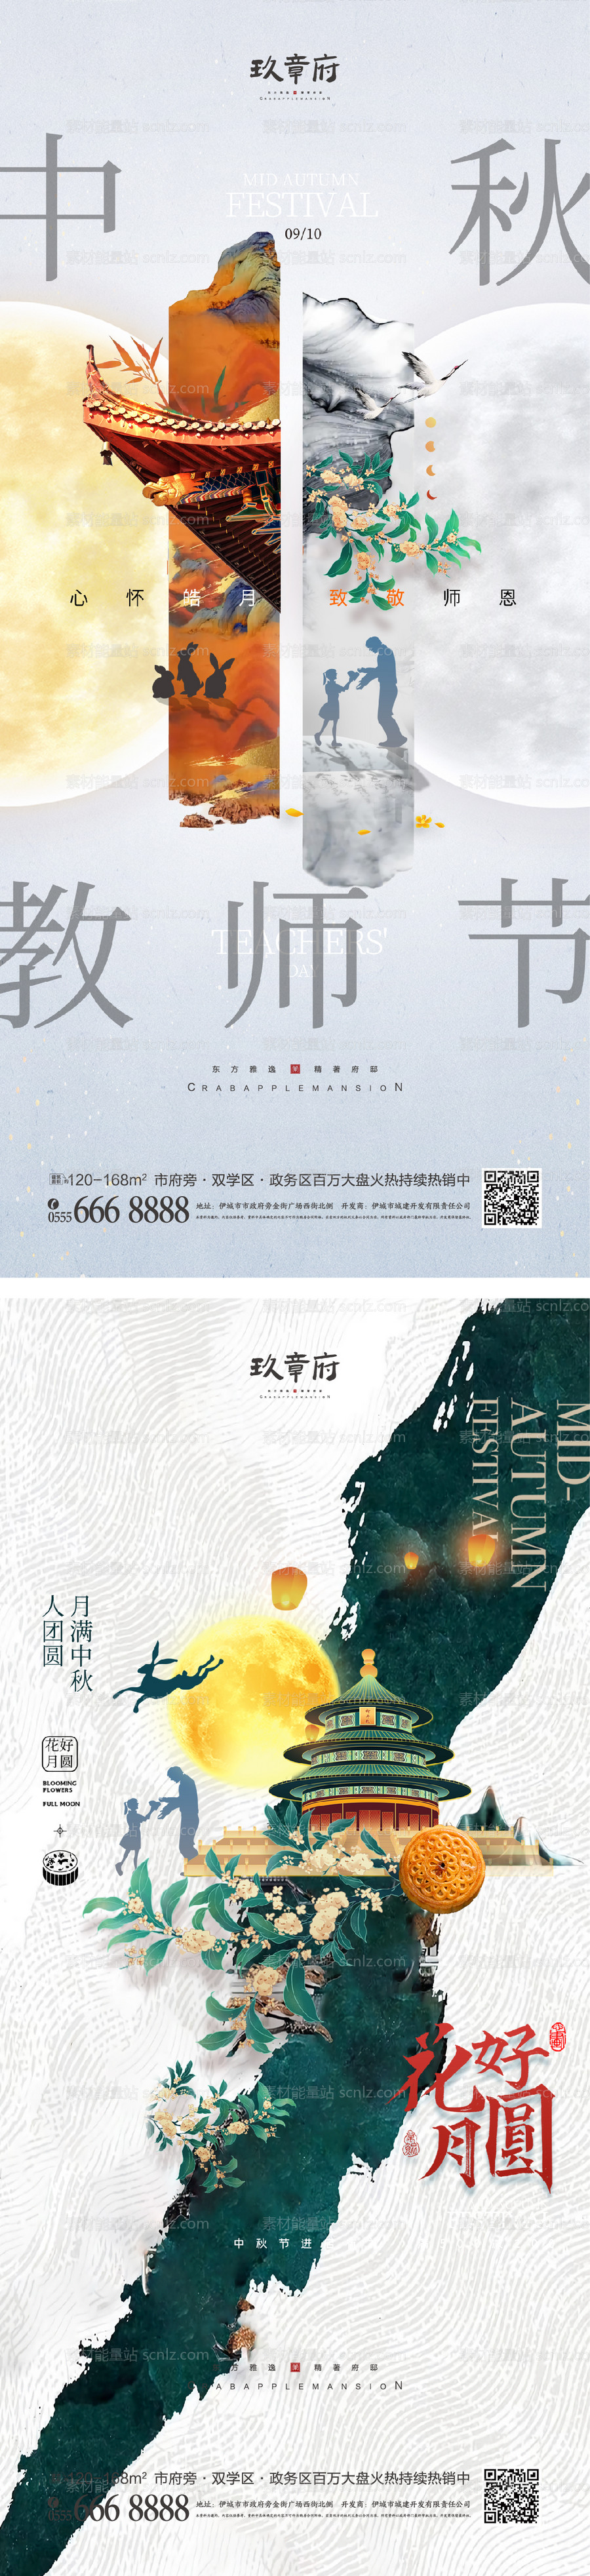 素材能量站-中秋节海报